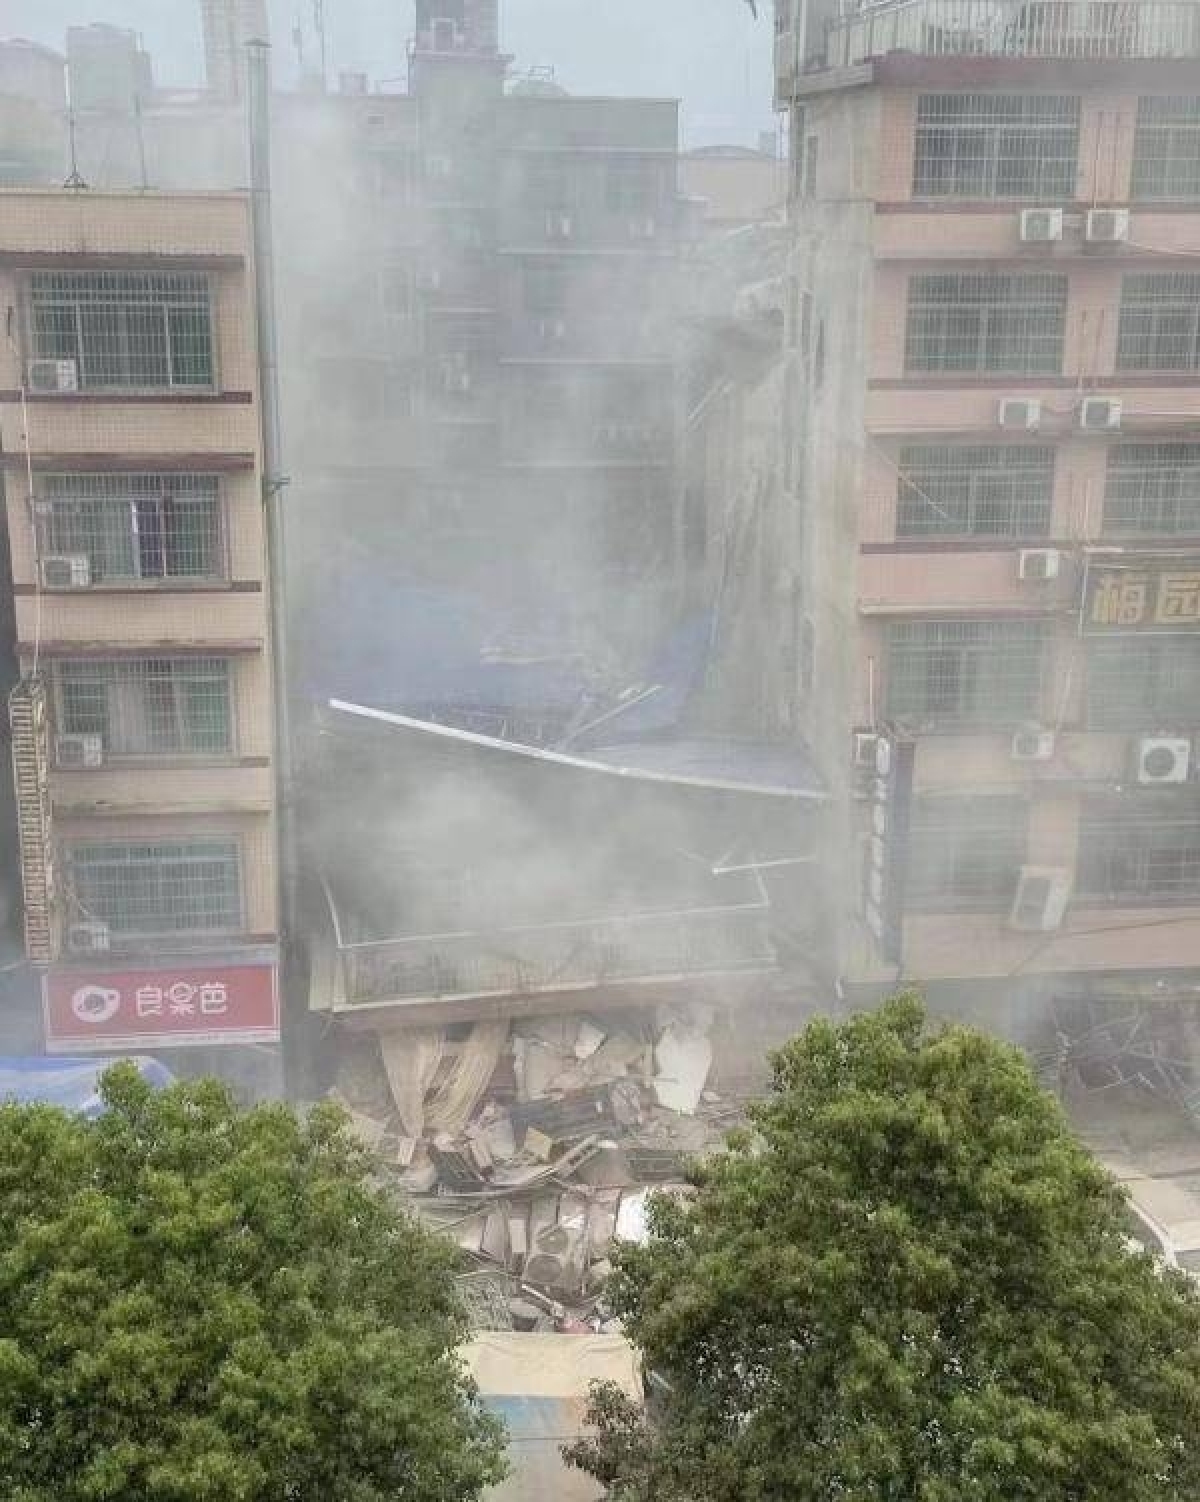 Gần 60 người mắc kẹt và mất tích trong vụ sập nhà ở Trung Quốc - Ảnh 1.